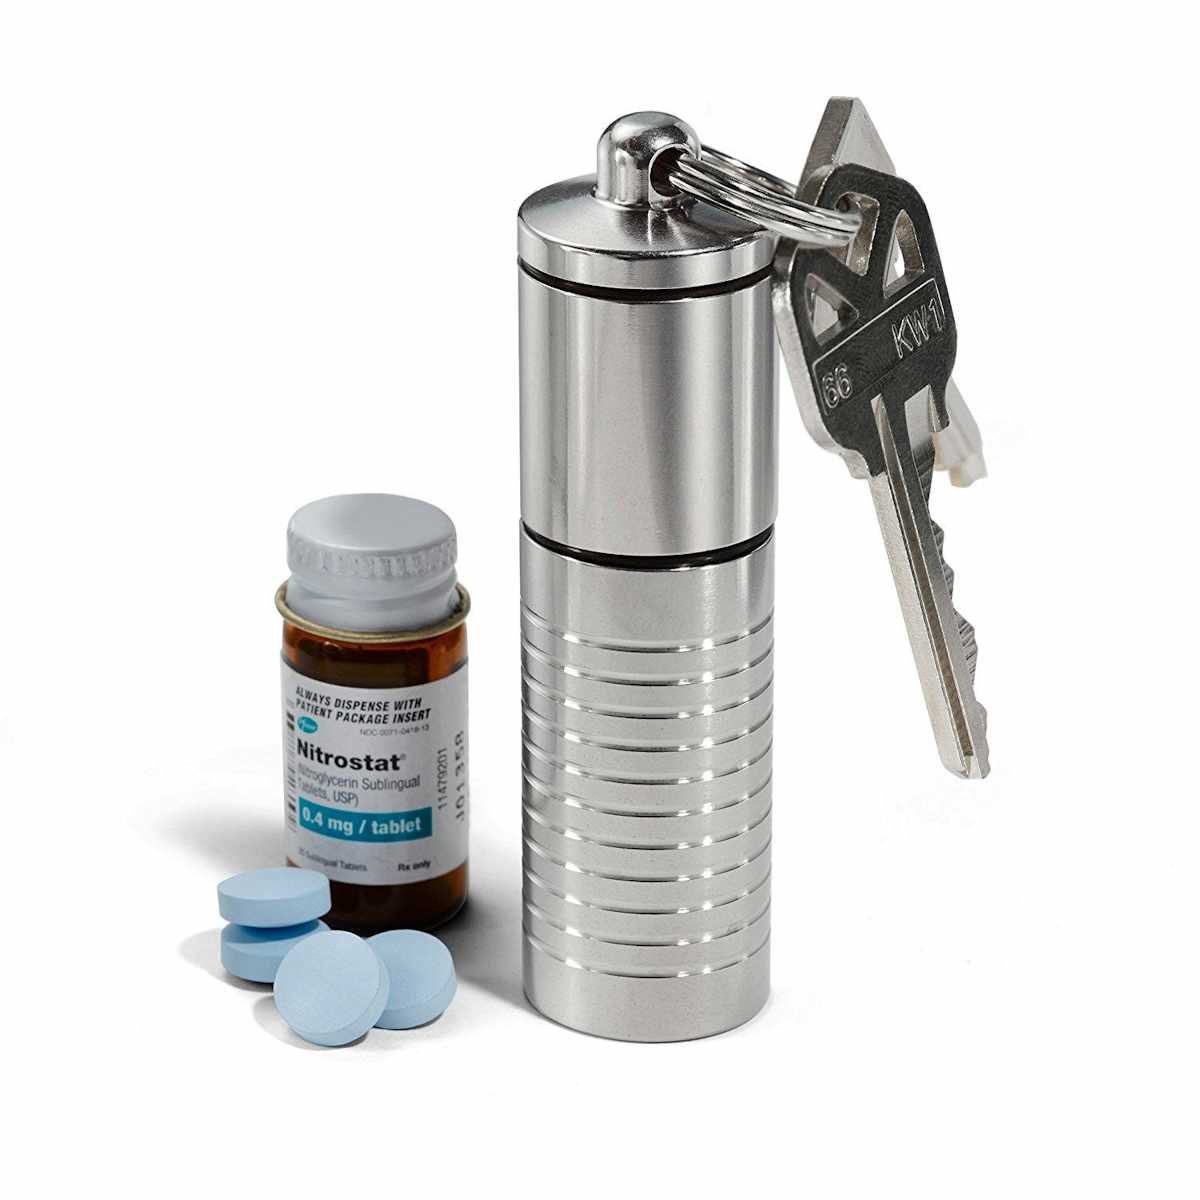 Best Nitroglycerin Bottle Holder for Nitrostat - Cielo Pill Holders